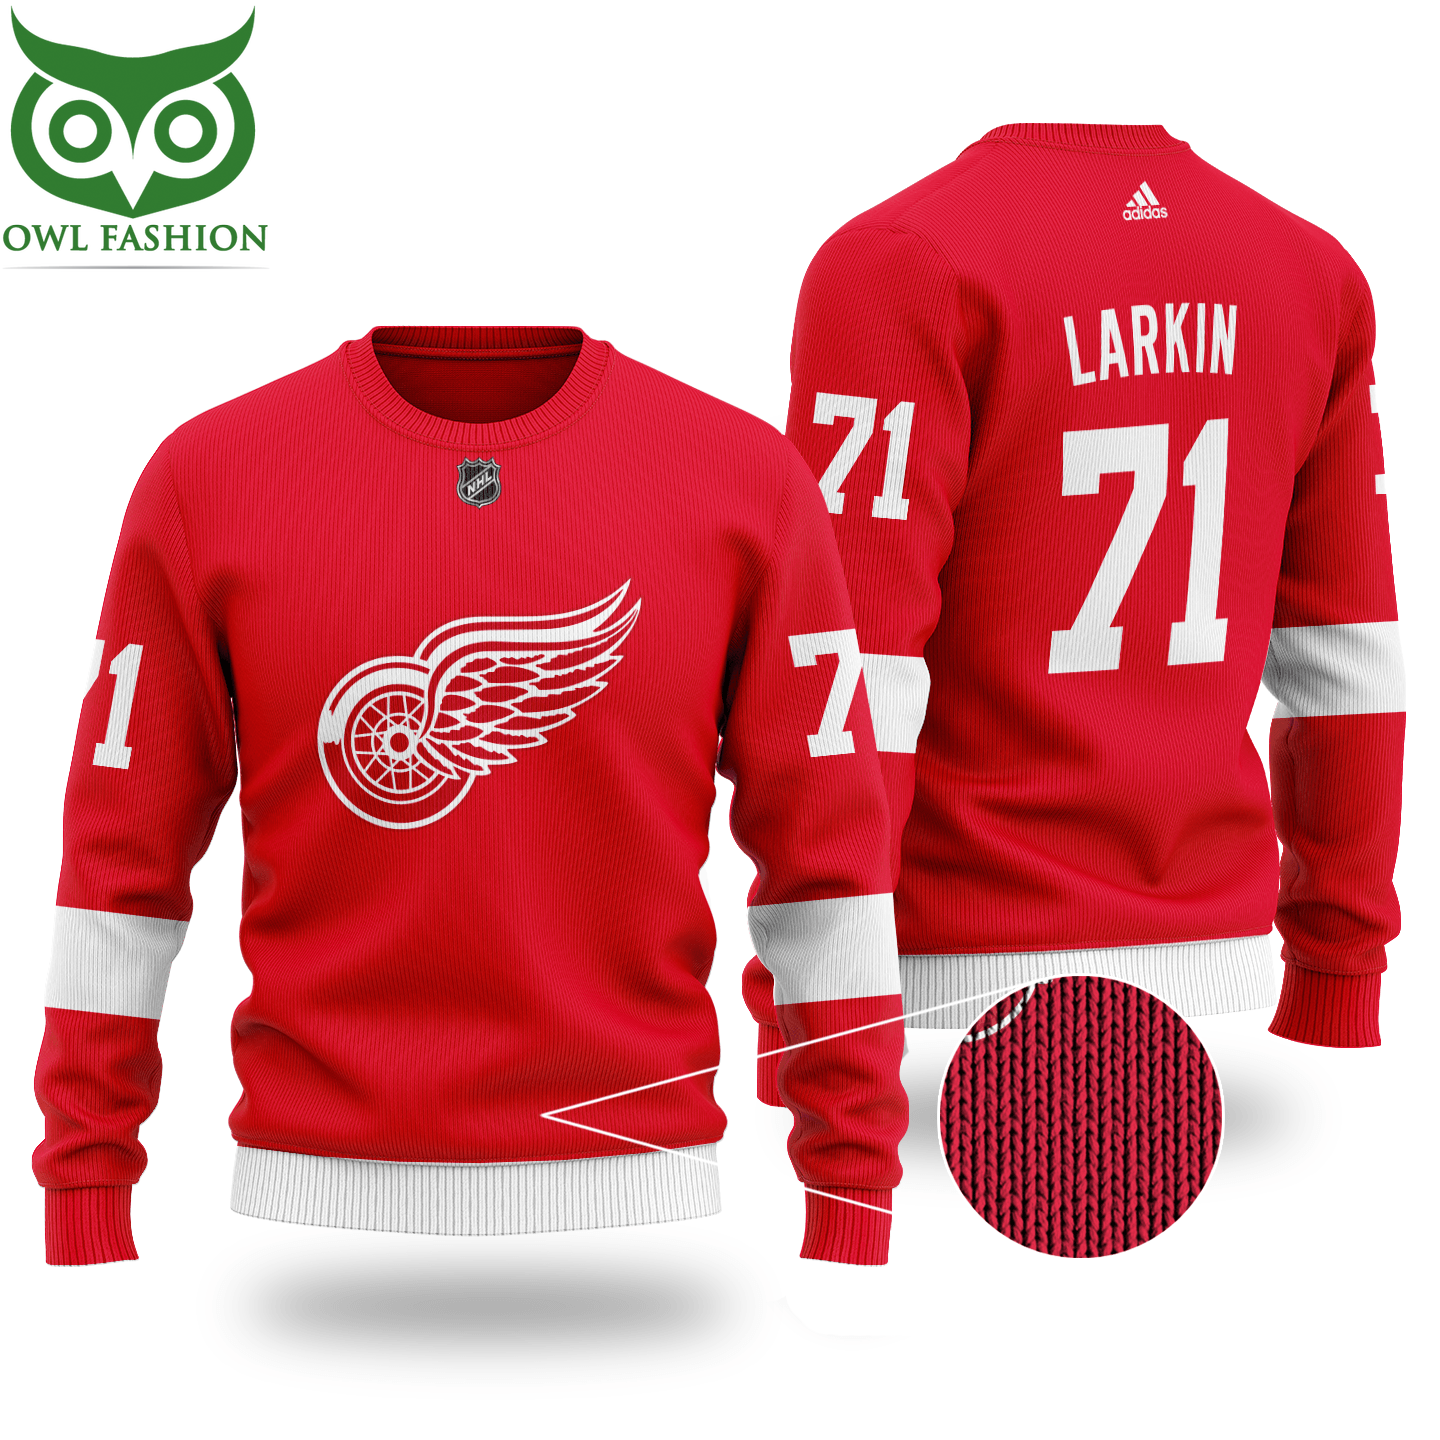 NHL DETROIT RED WINGS Larkin 71 red wool sweater